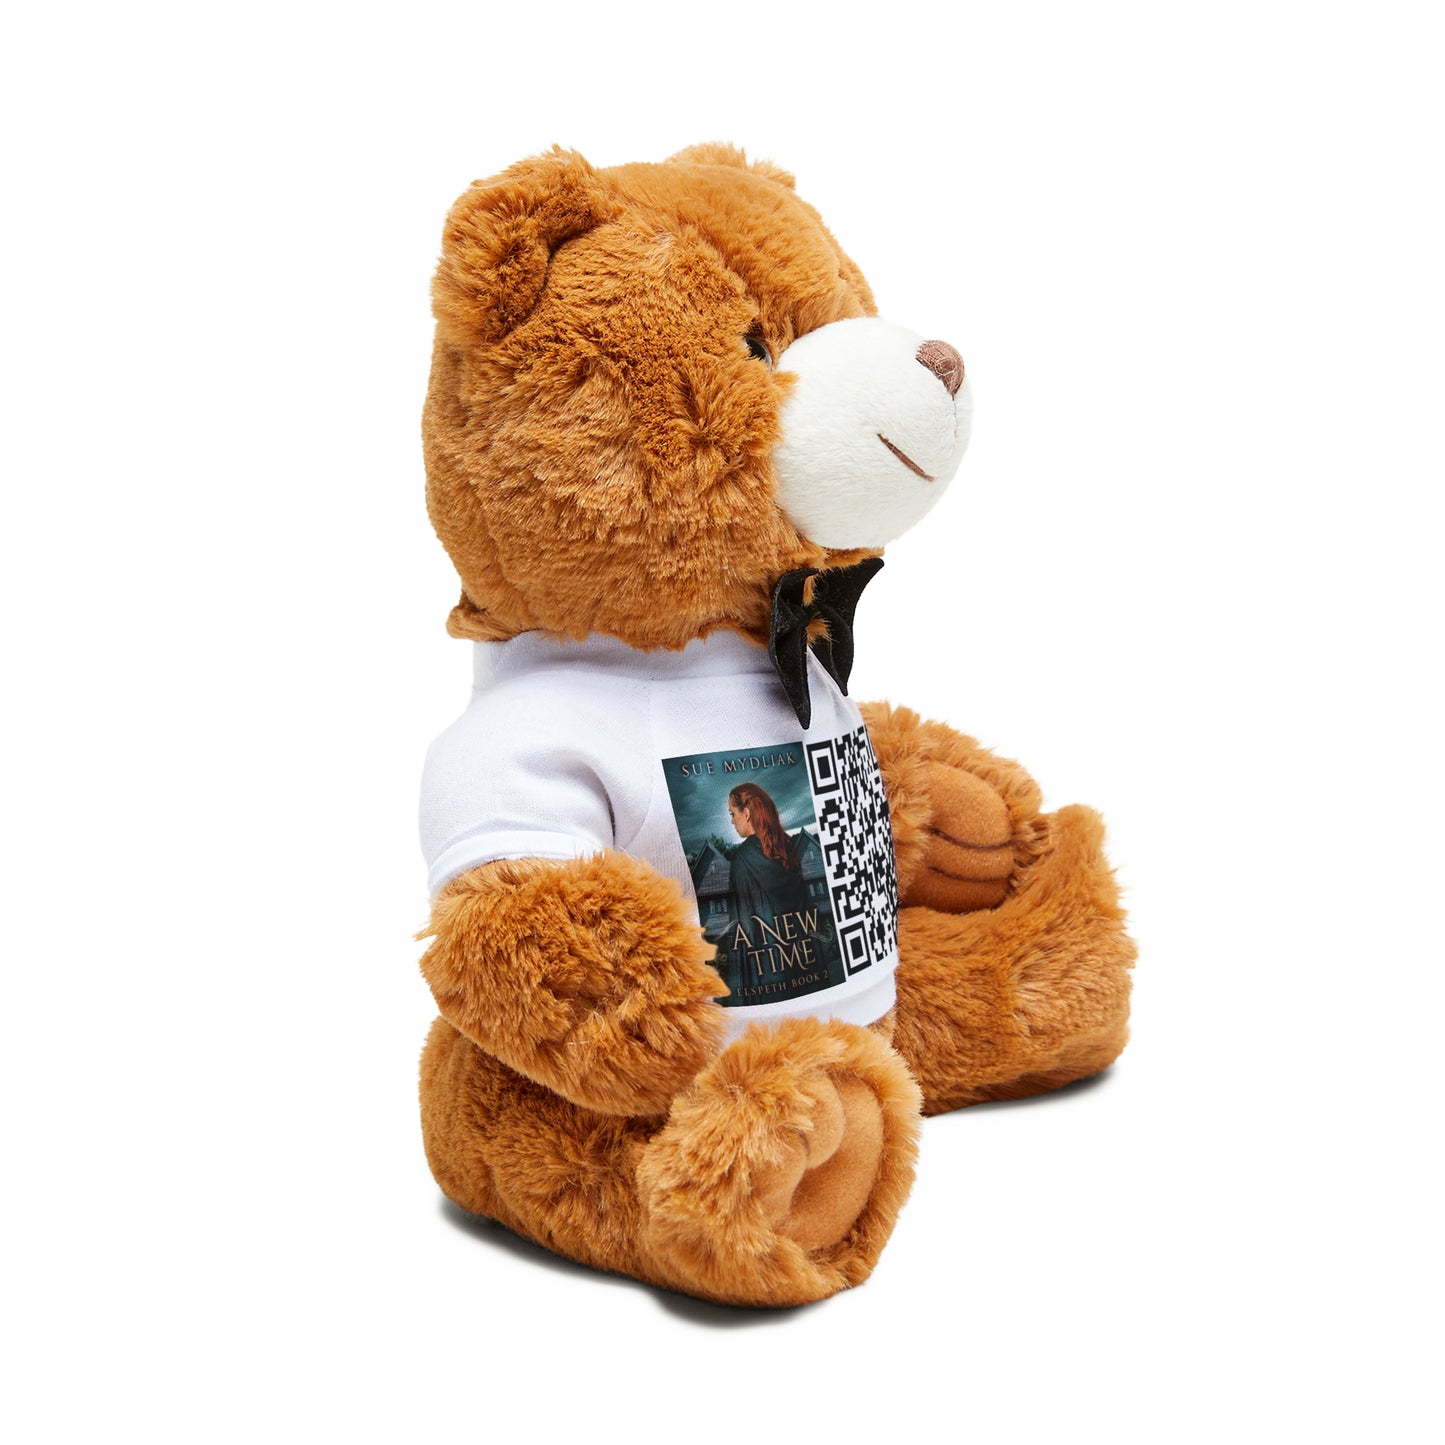 A New Time - Teddy Bear